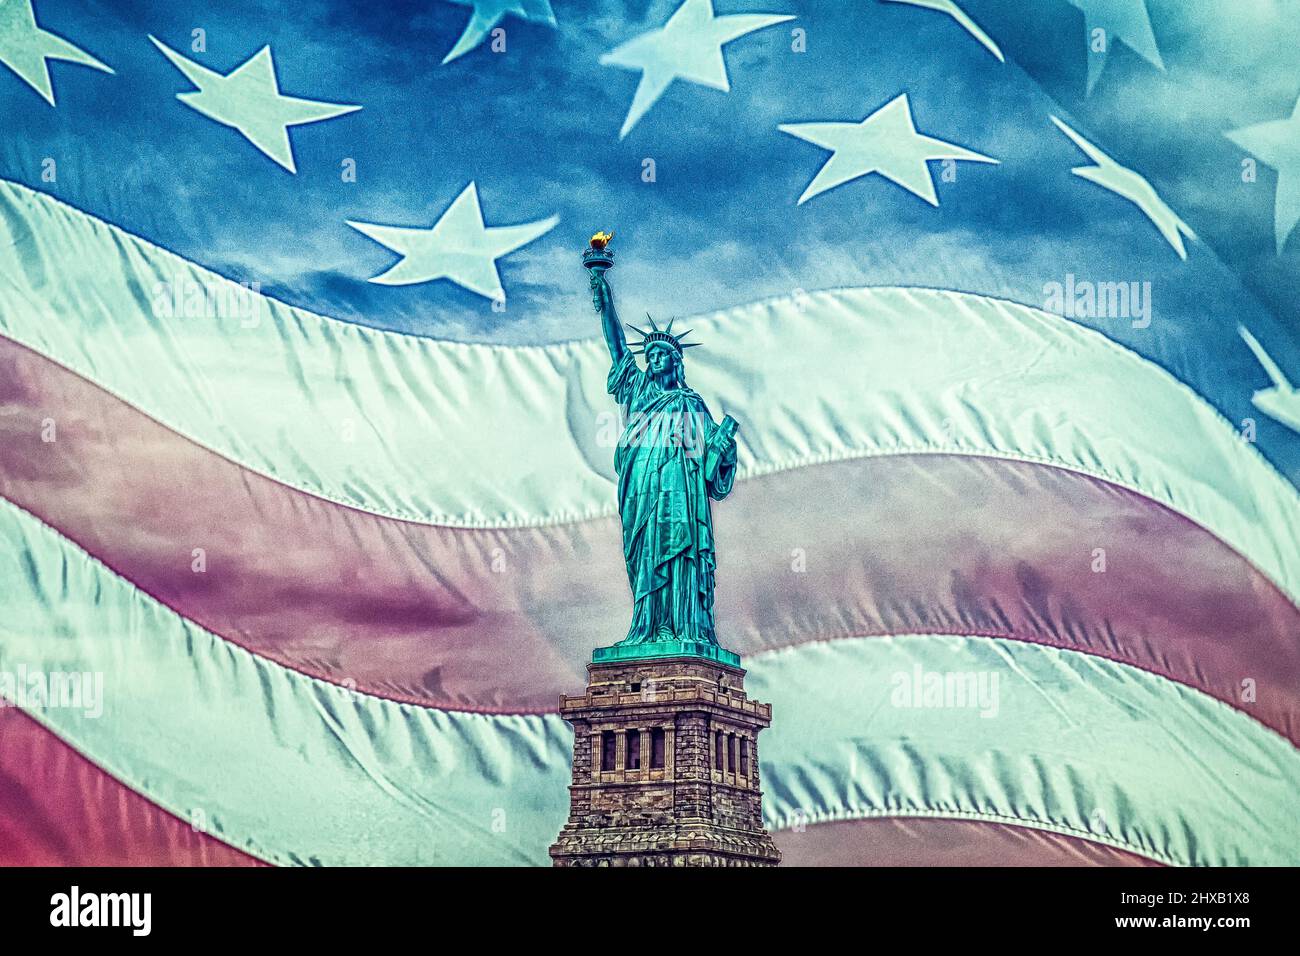 Miss Amérique - drapeau américain - Etats-Unis - Statue de la liberté - rêve américain - Freiheitsstatue - Traum amerikanischer - Wahrzeichen Banque D'Images